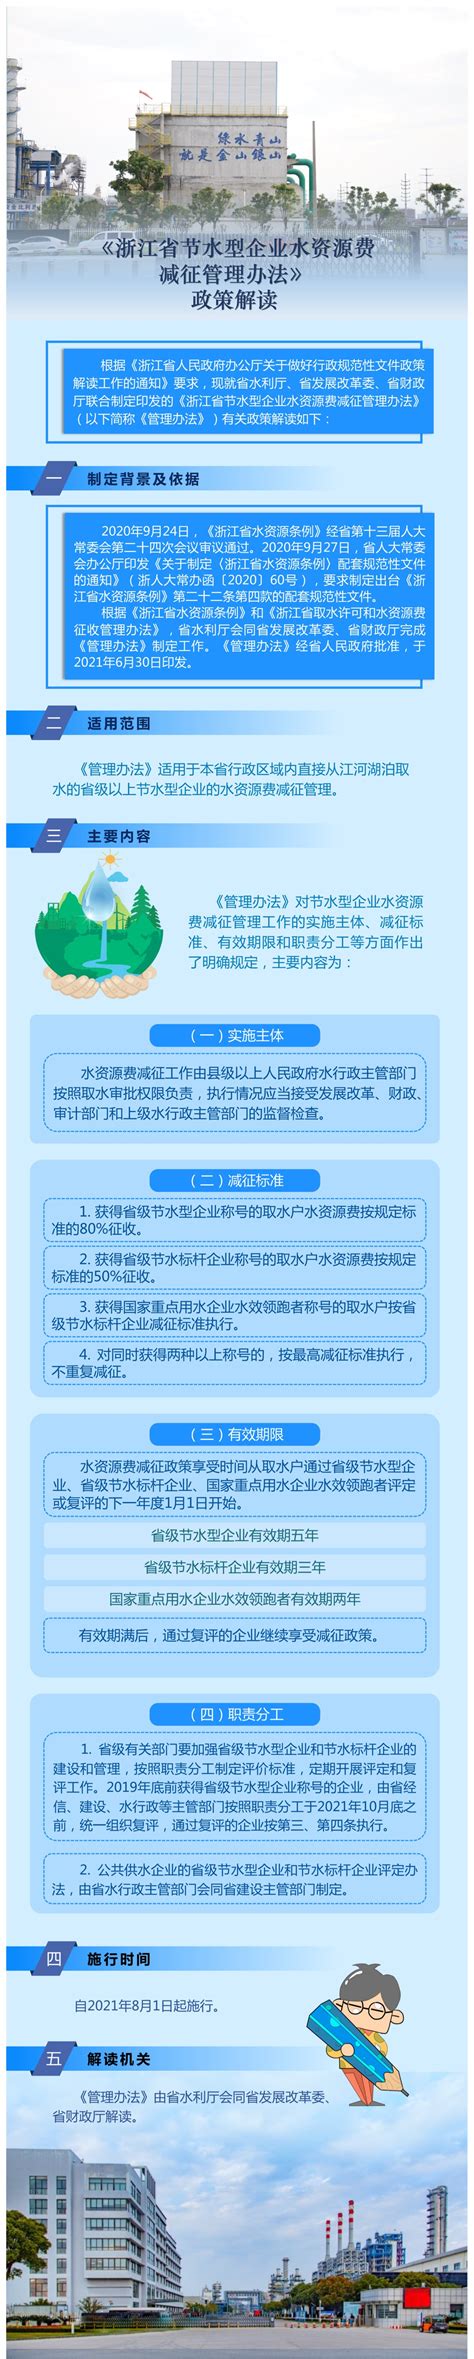 【图解】《浙江省节水型企业水资源费减征管理办法》解读